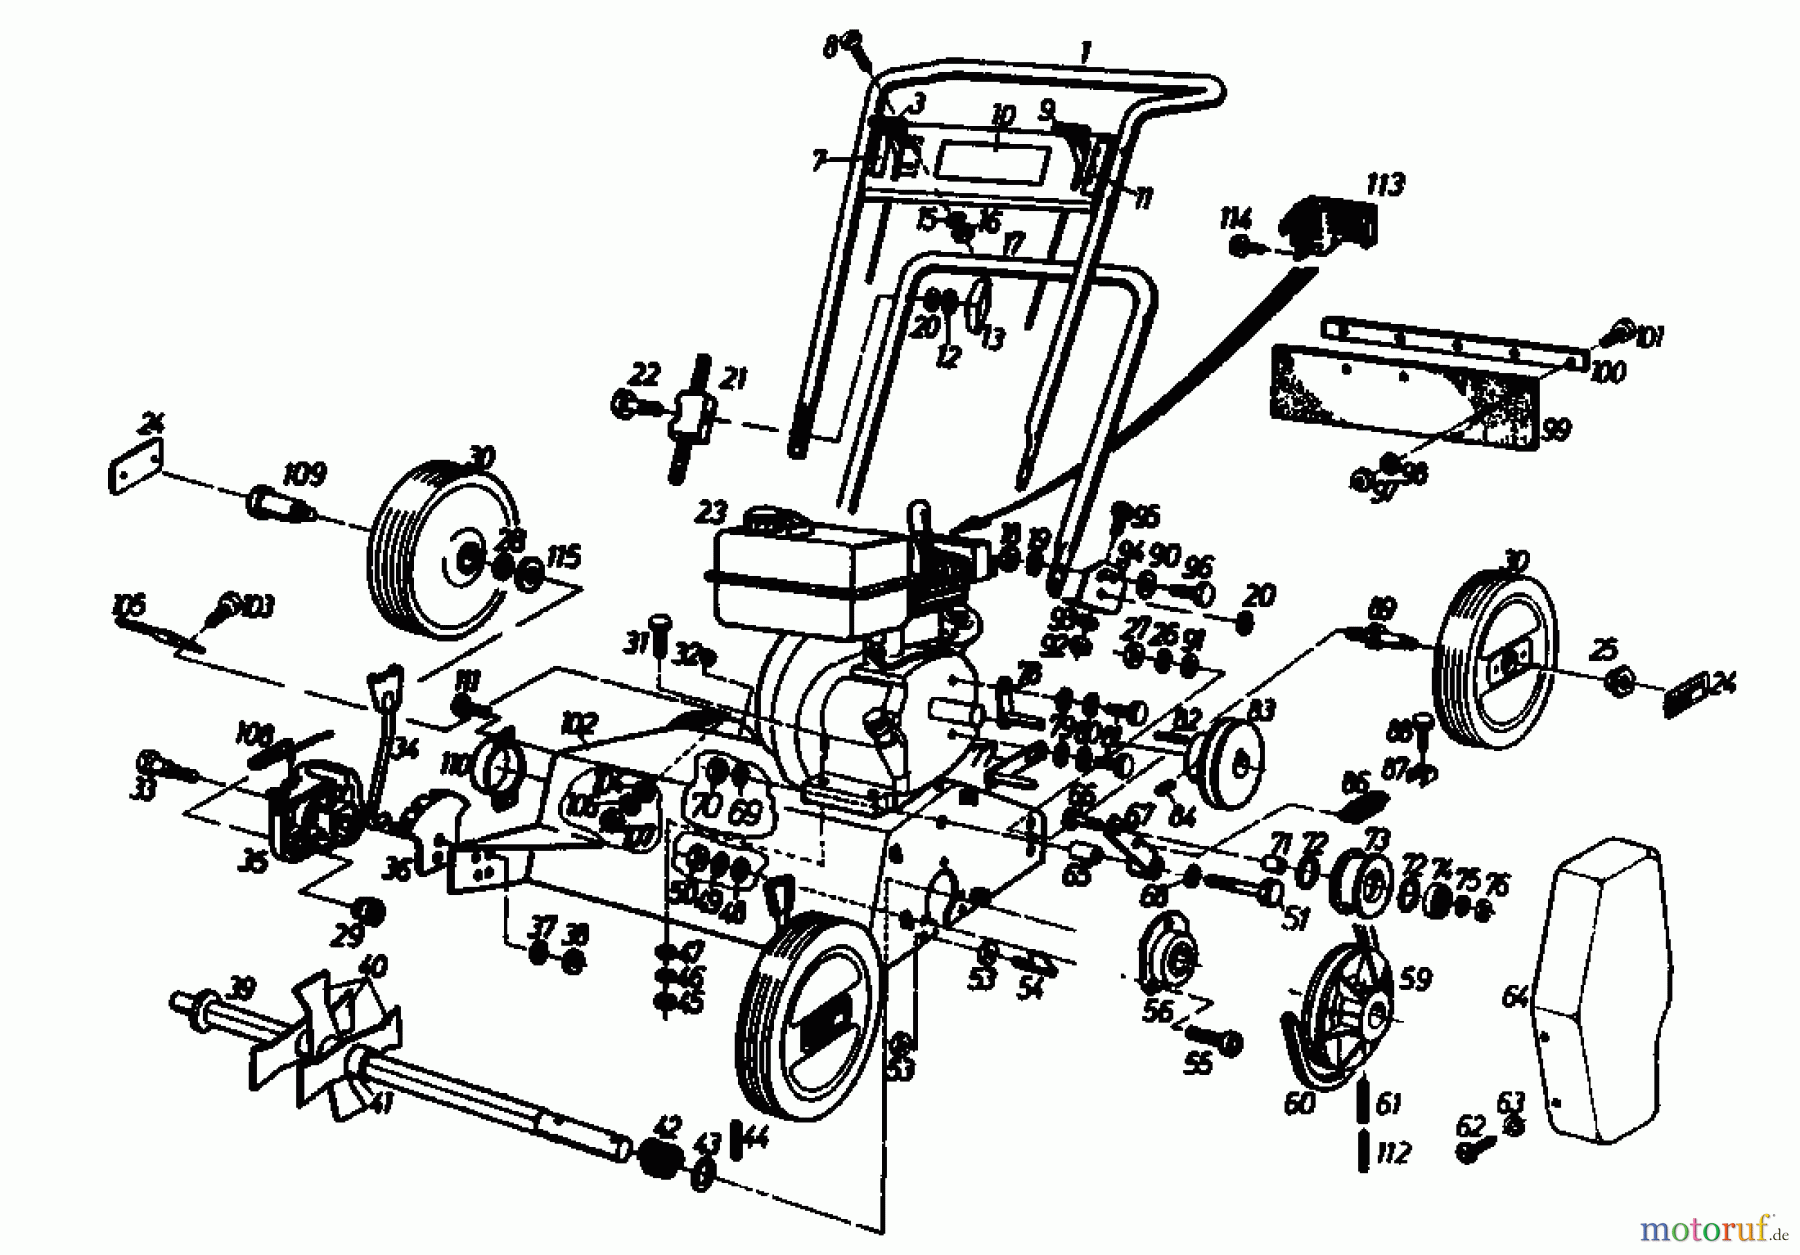  Gutbrod Petrol verticutter VS 40 A 00054.04  (1986) Basic machine